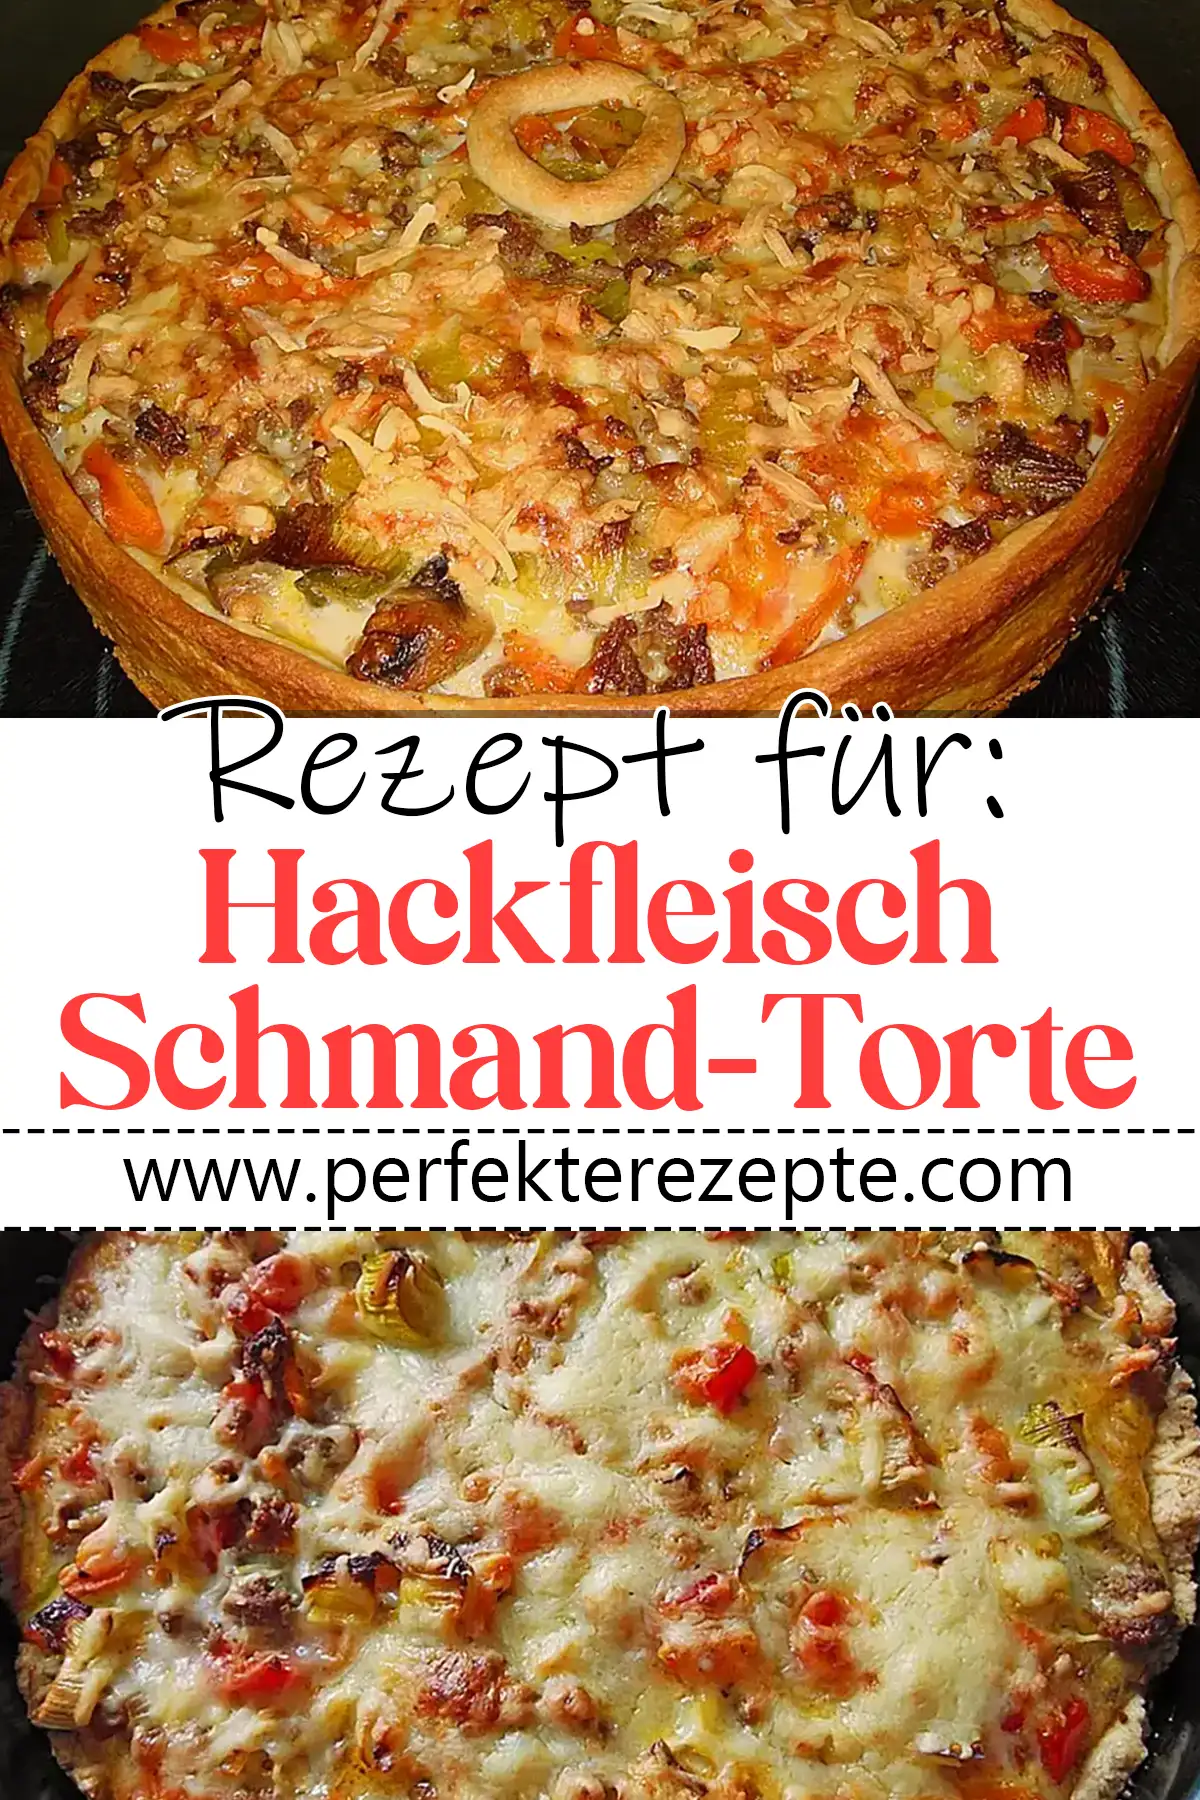 Hackfleisch-Schmand-Torte Rezept